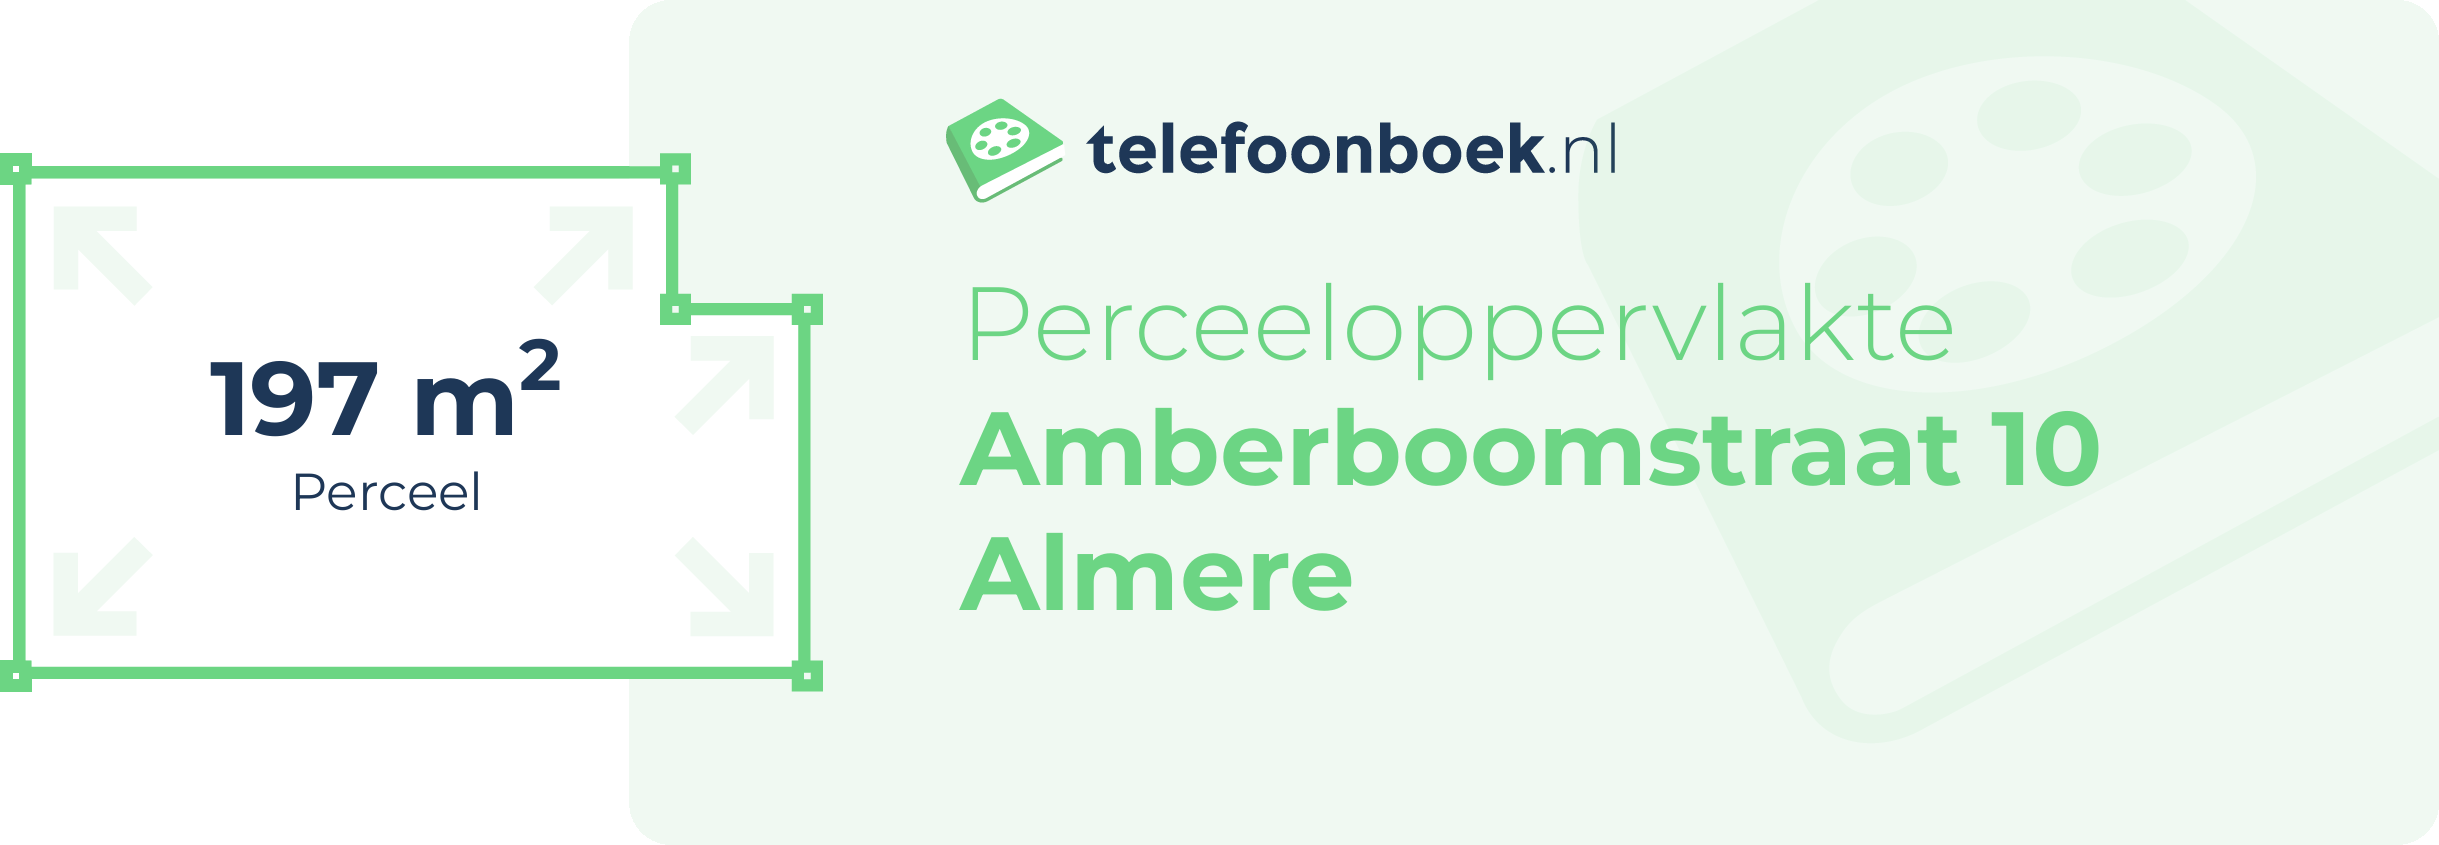 Perceeloppervlakte Amberboomstraat 10 Almere